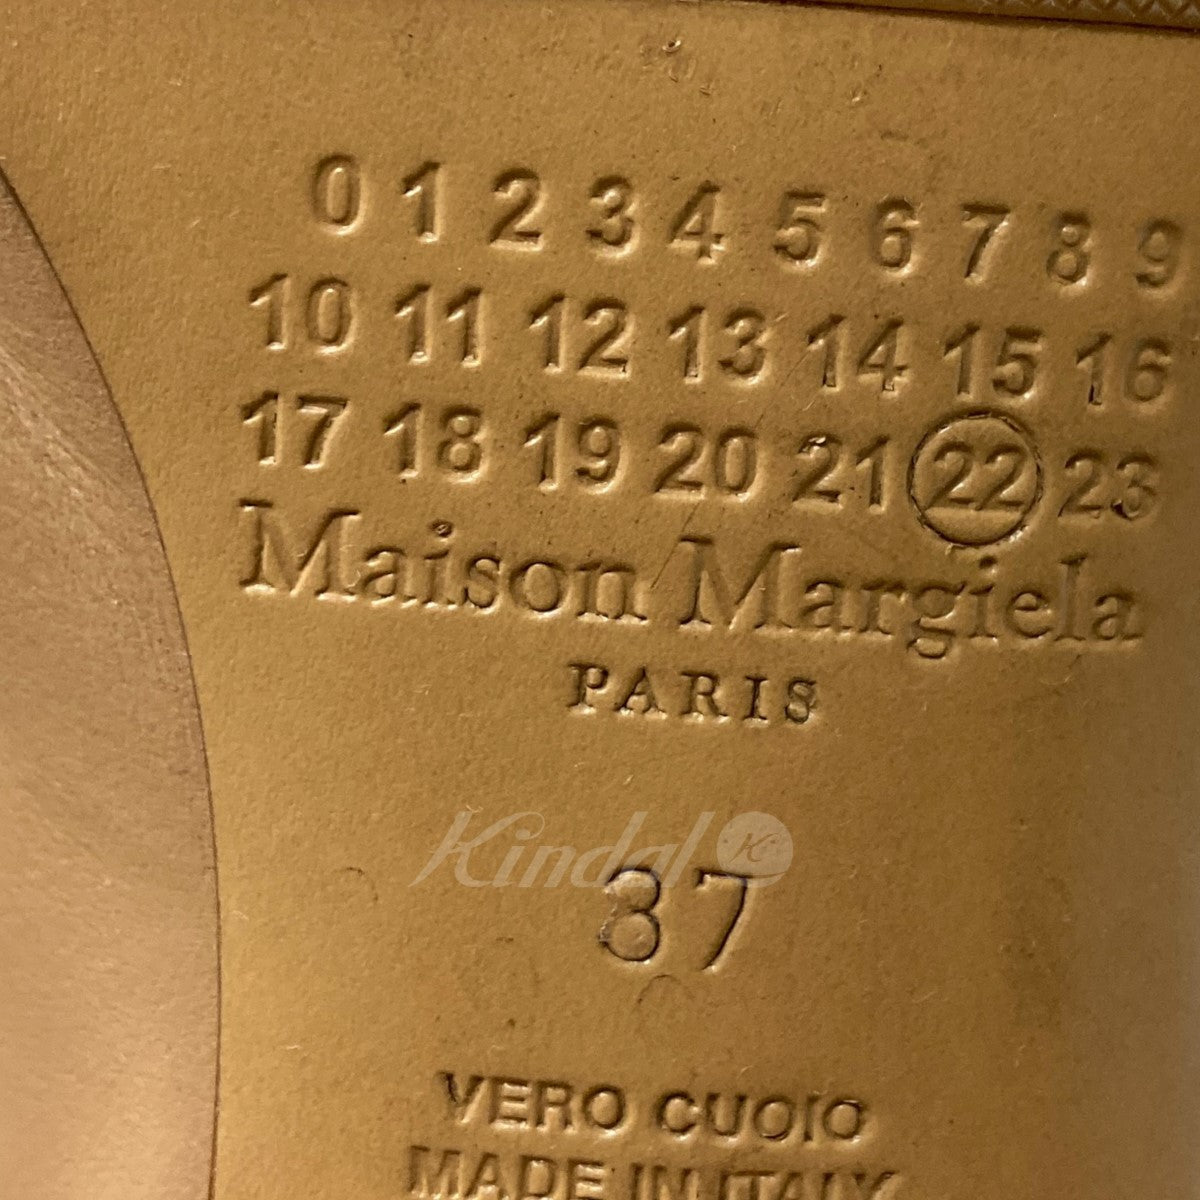 Maison Margiela(メゾンマルジェラ) 足袋ブーツ ベージュ サイズ 14 